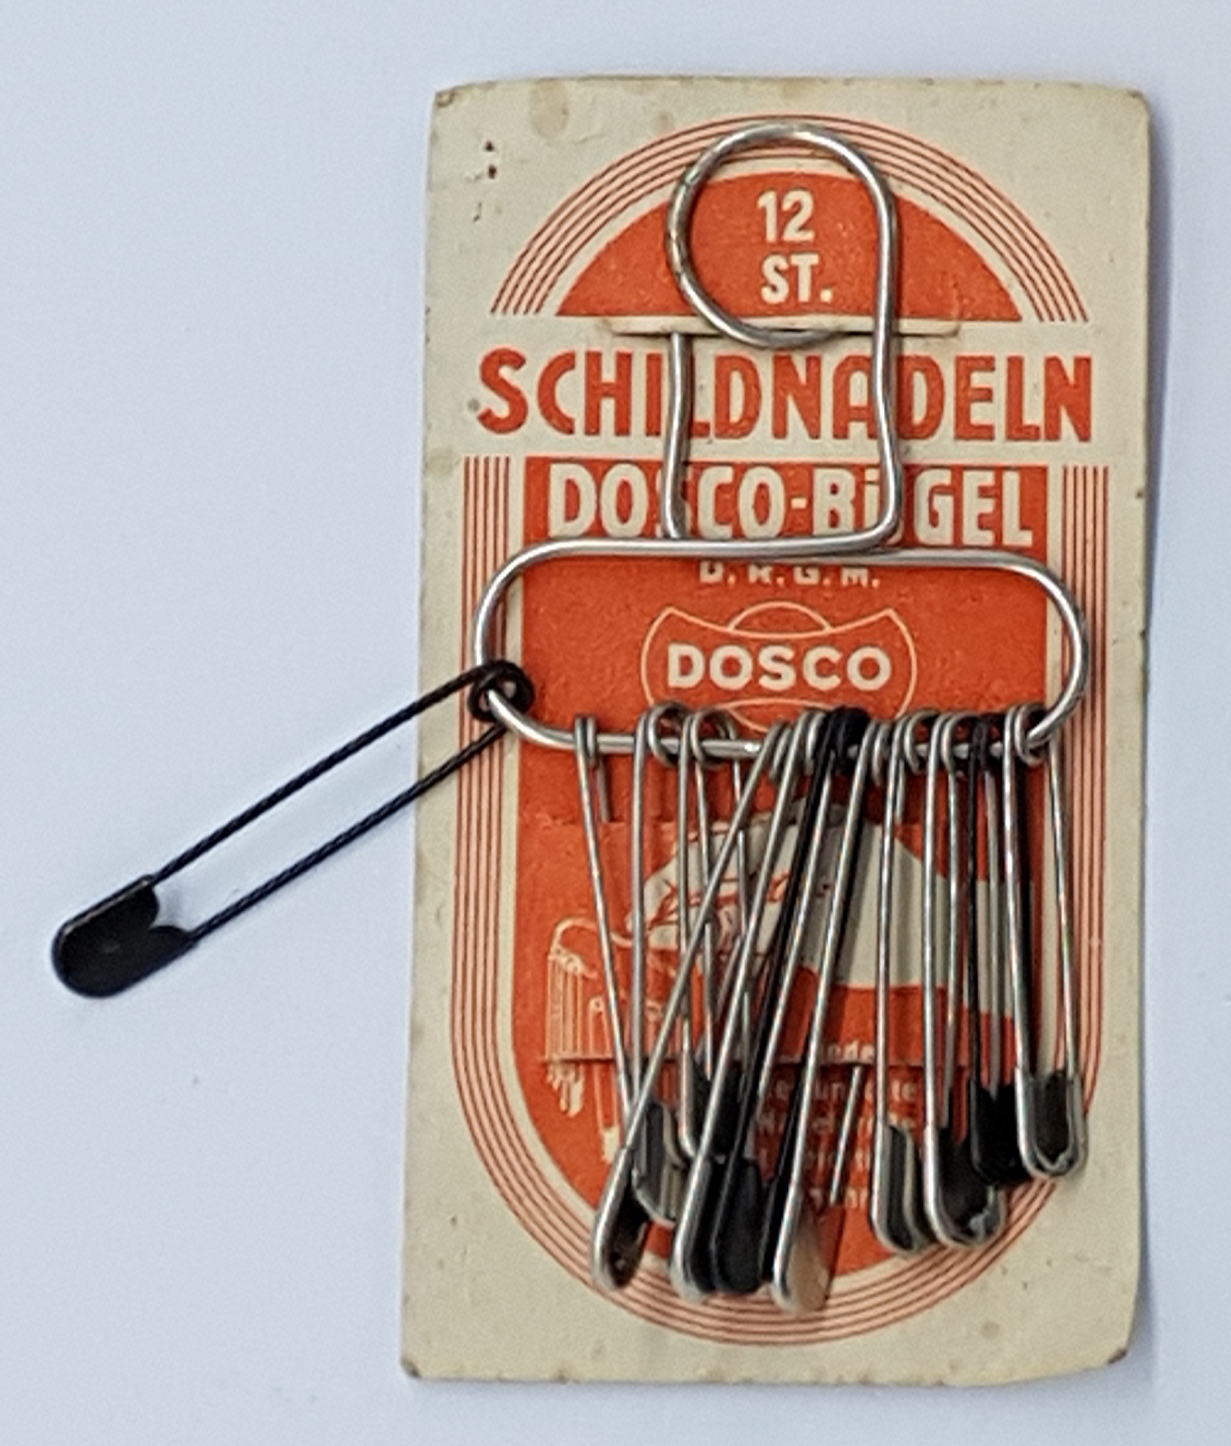  Alte Dosco Sicherheitsnadeln vor 1945 OVP Schildnadeln Dosco-Bügel D.R.G.M